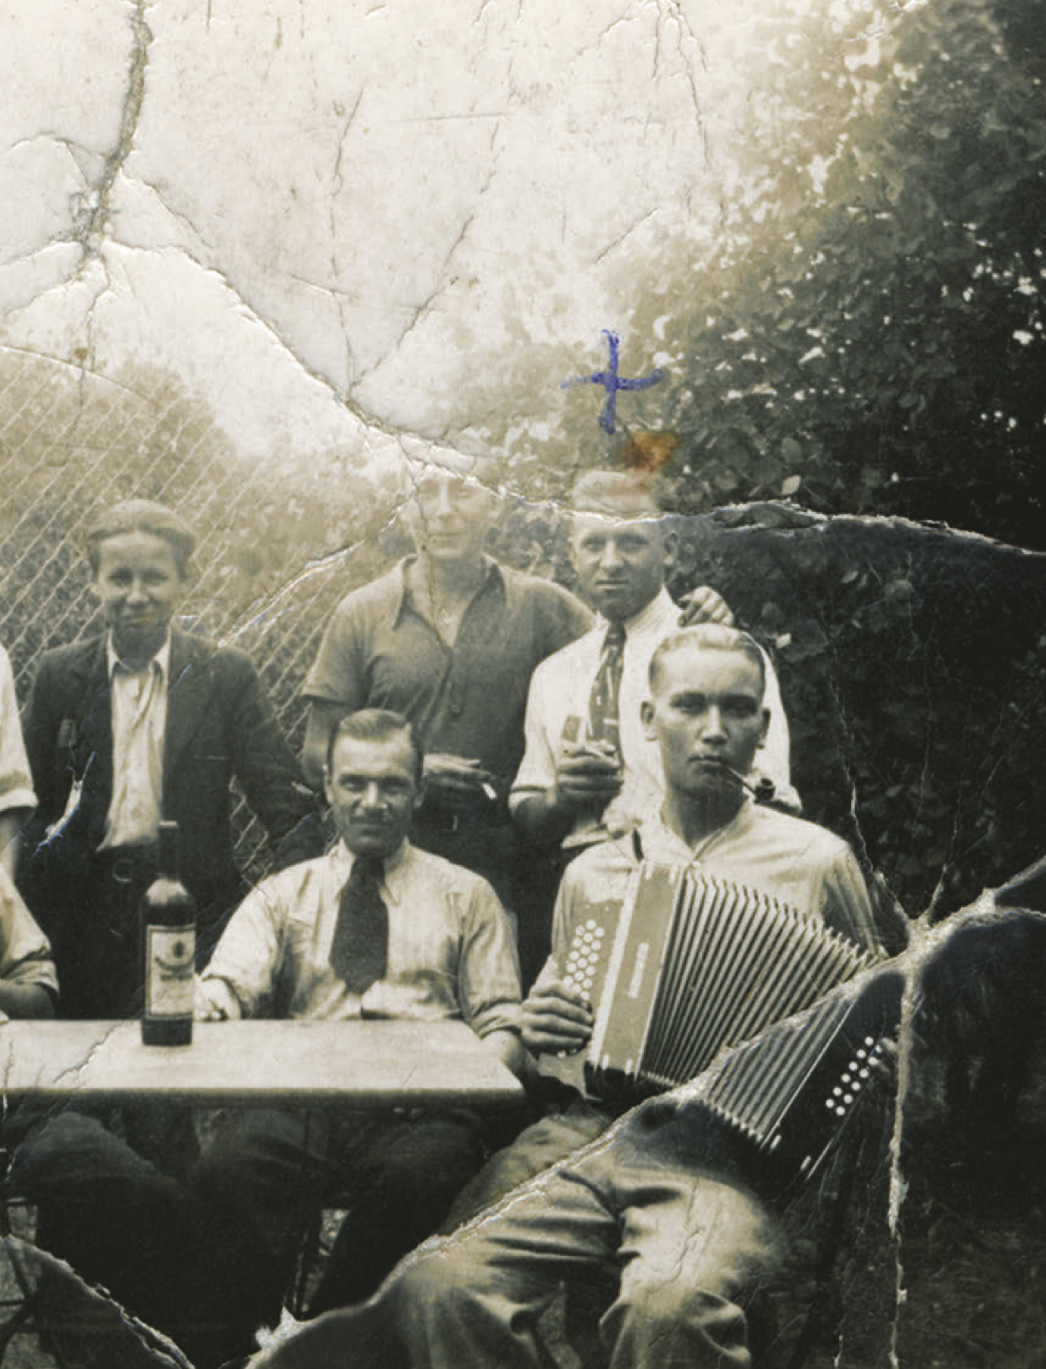 Schwarz-Weiß-Fotografie von polnischen Zwangsarbeitern, darunter Tadeusz Czerniak